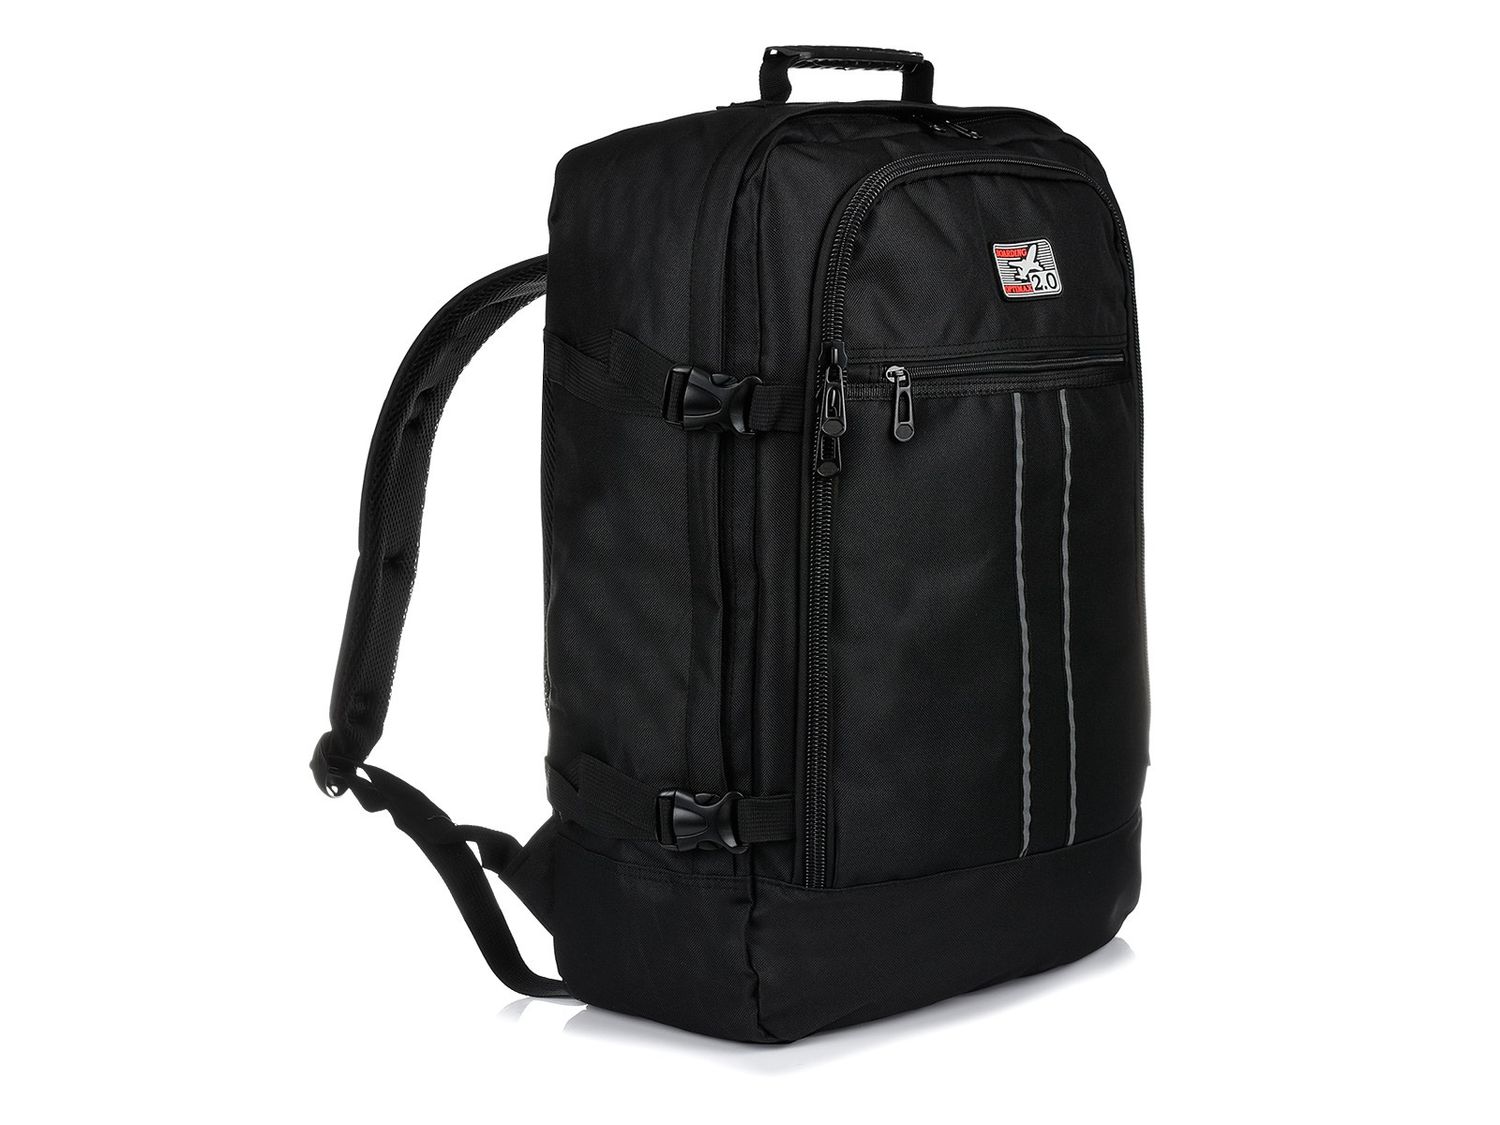 Czarny Plecak Podróżny Samolotowy Bagaż podręczny Solidny Q74